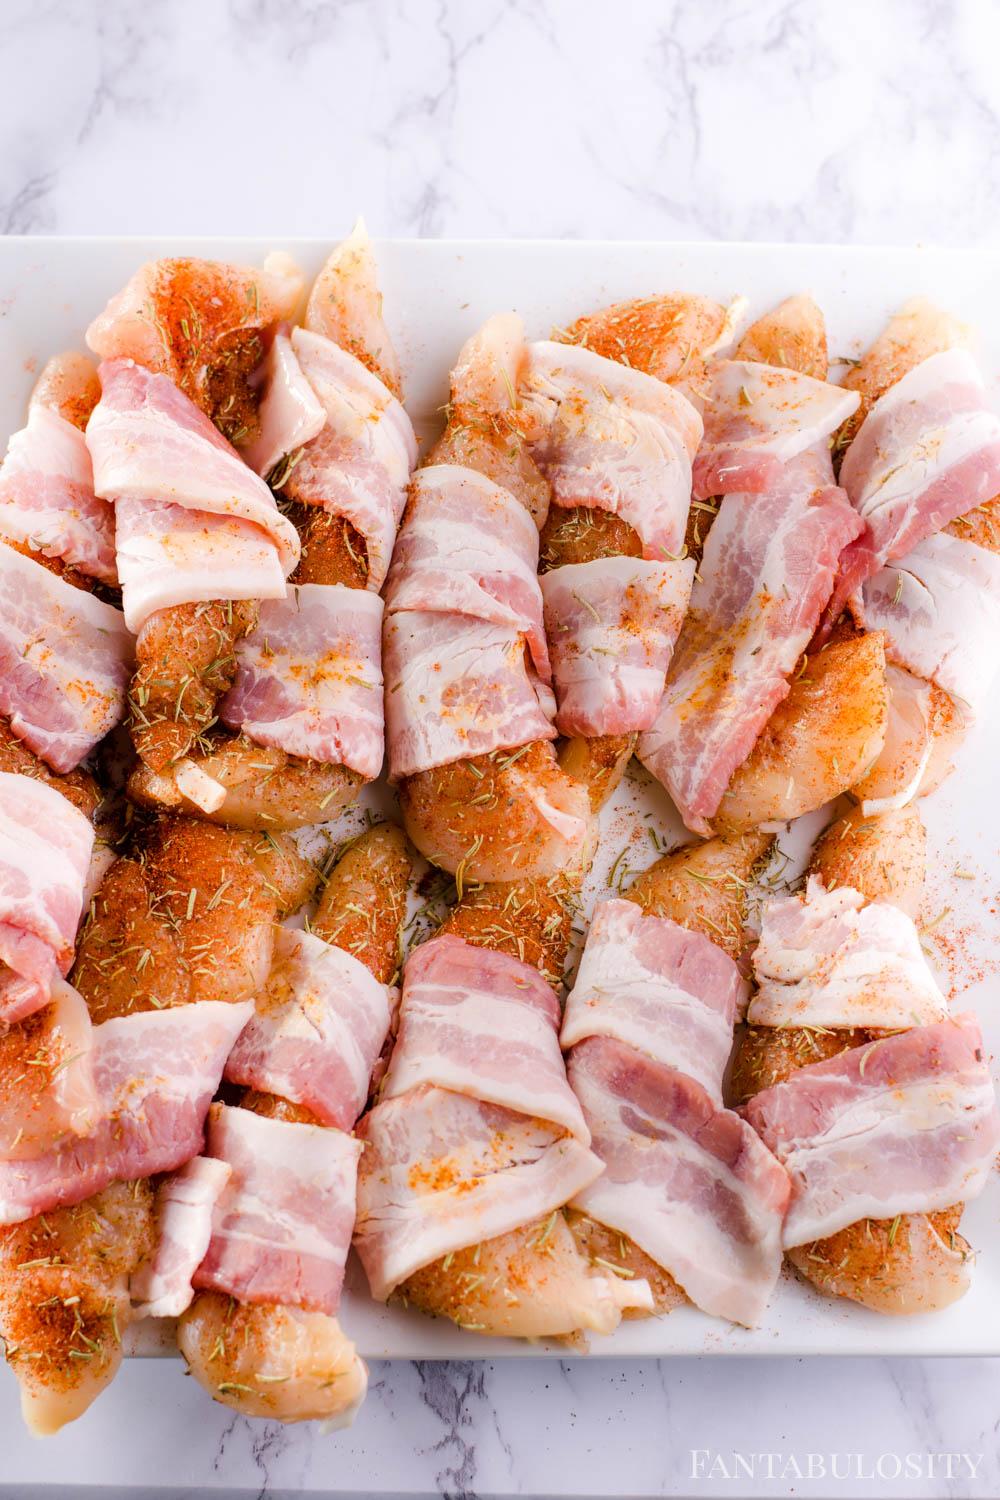 Wrap chicken tenders in bacon